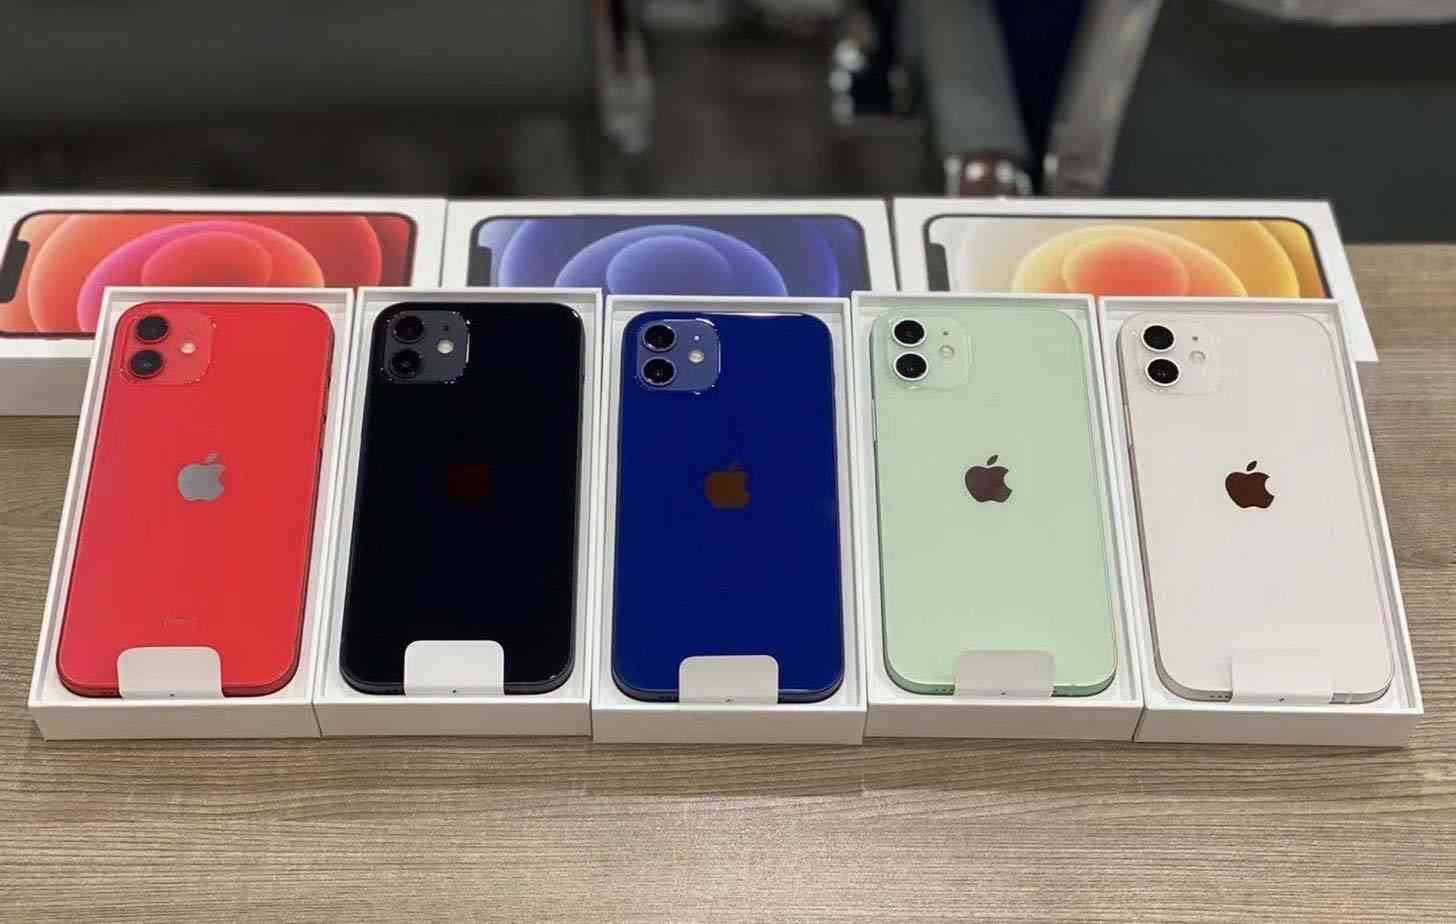 iPhone 12 colors comparison